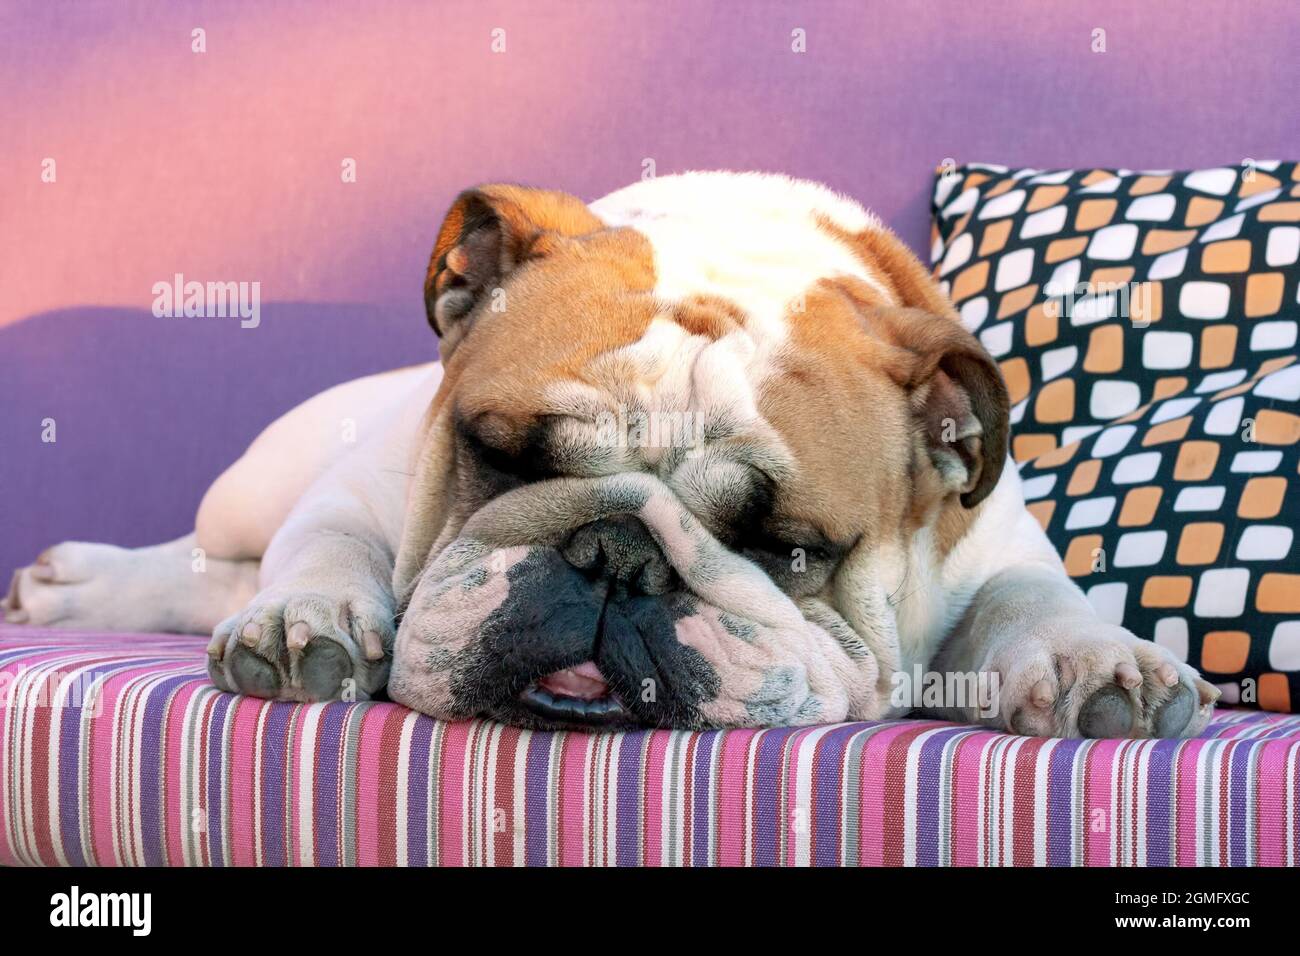 Englischer Bulldog, der auf einem farbenfrohen Bett schläft Stockfotografie  - Alamy